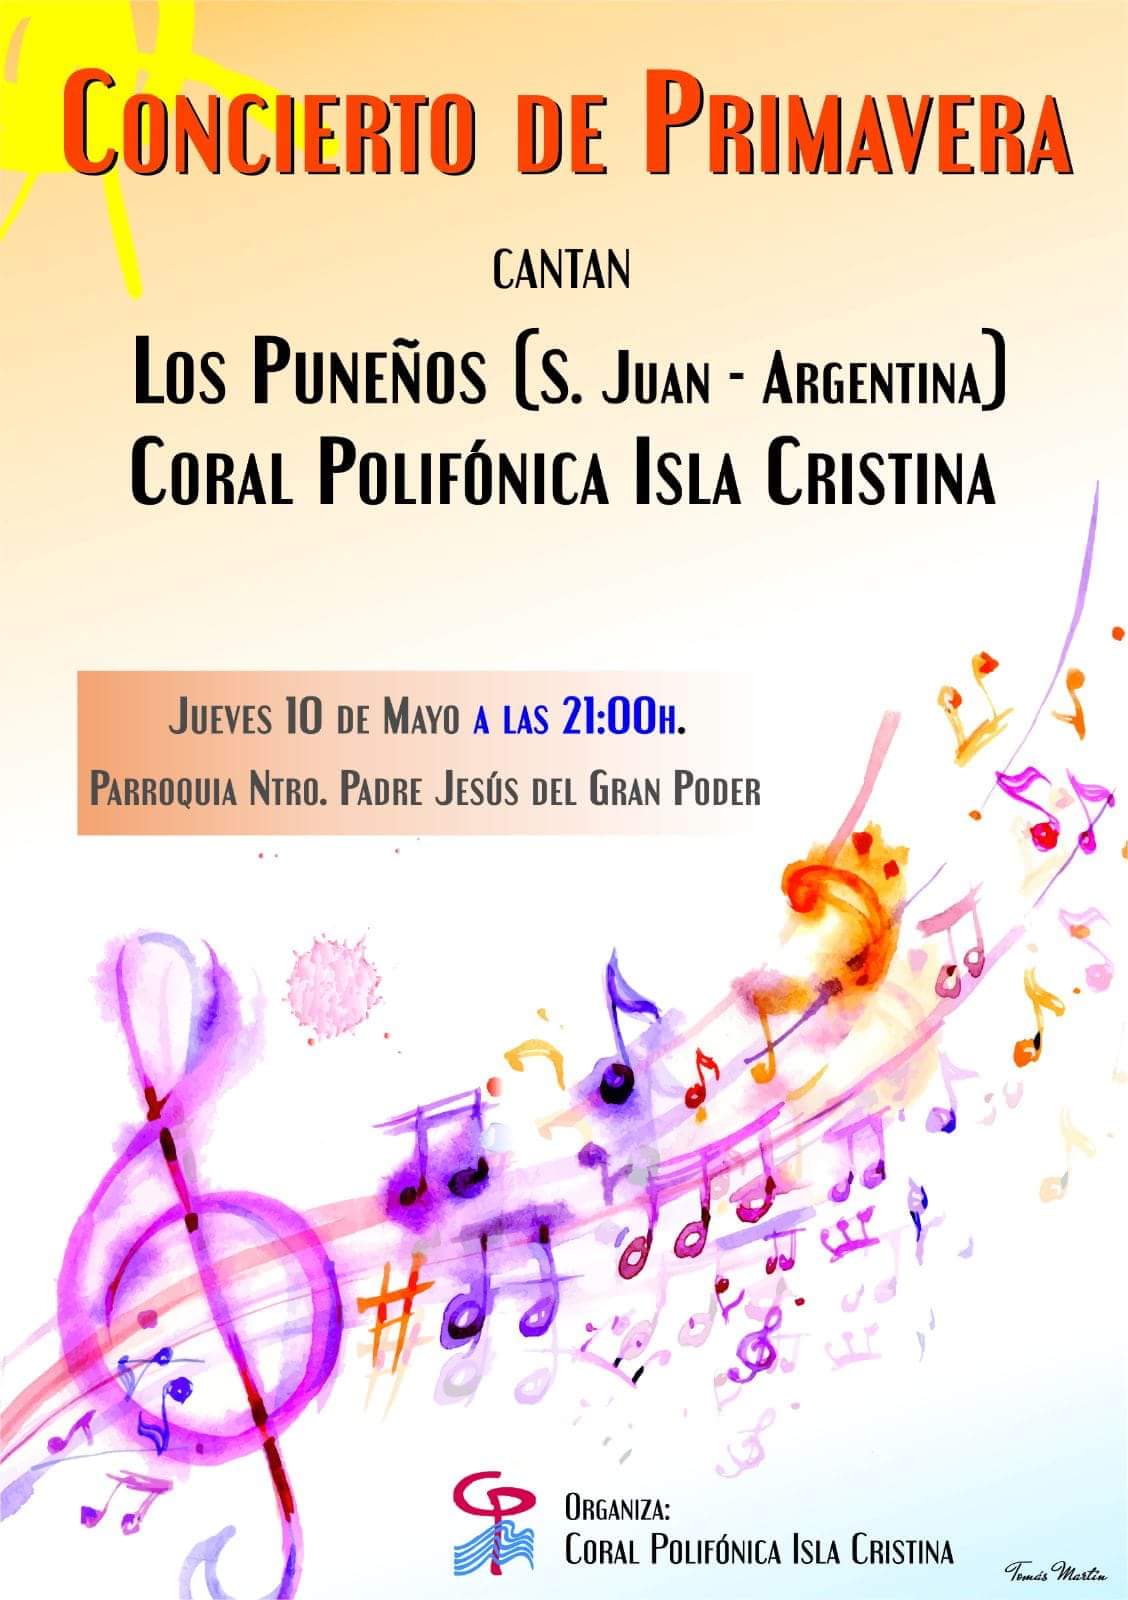 Concierto de Primavera de la Coral Polifónica Isla Cristina